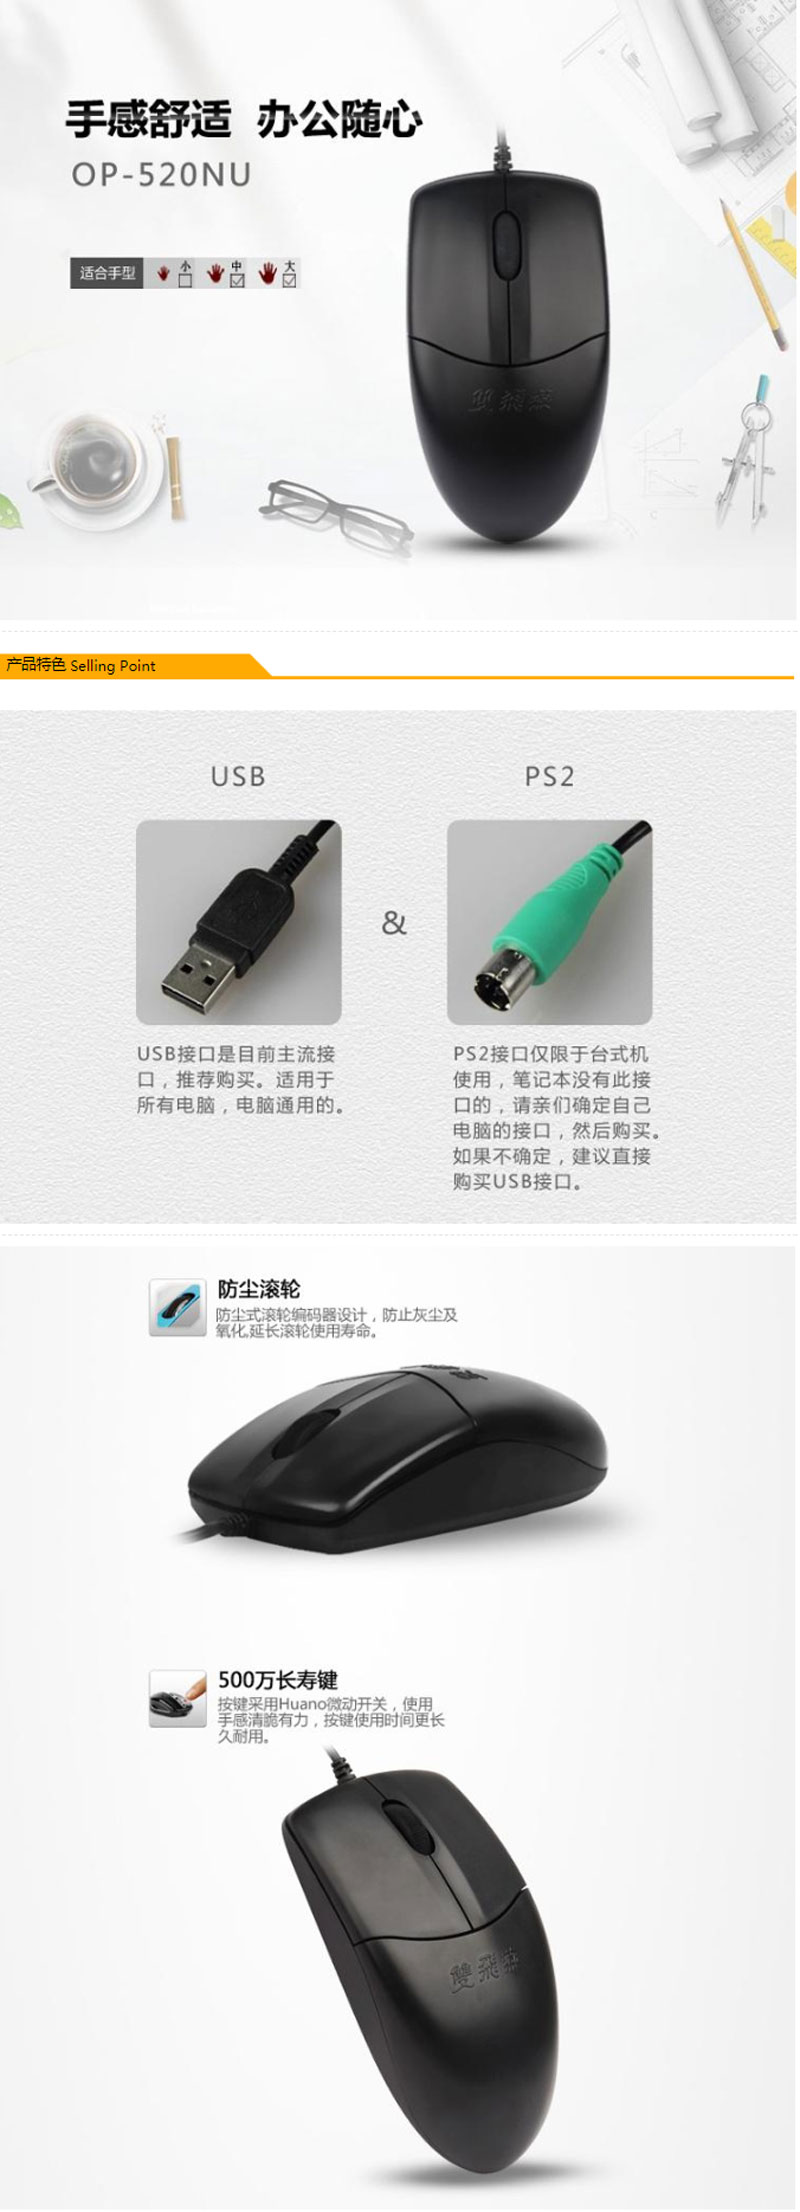 双飞燕OP-520NU 有线USB鼠标